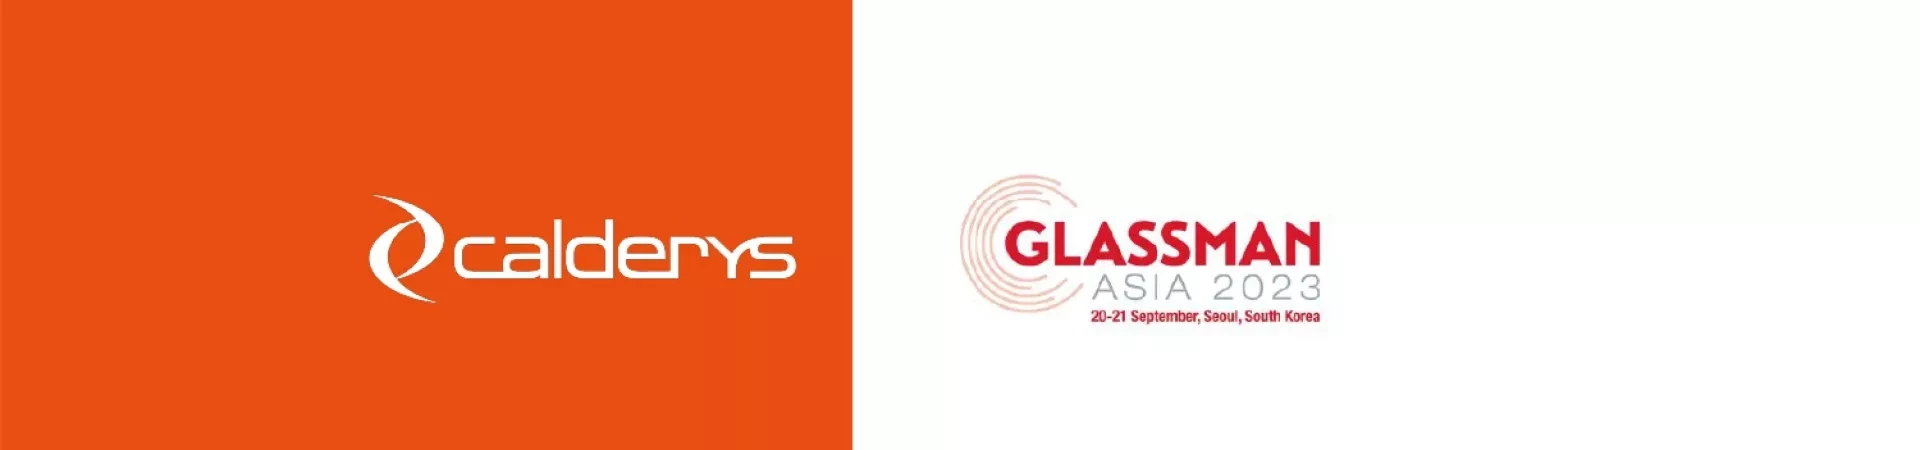 Calderys at Glassman Asia 2023